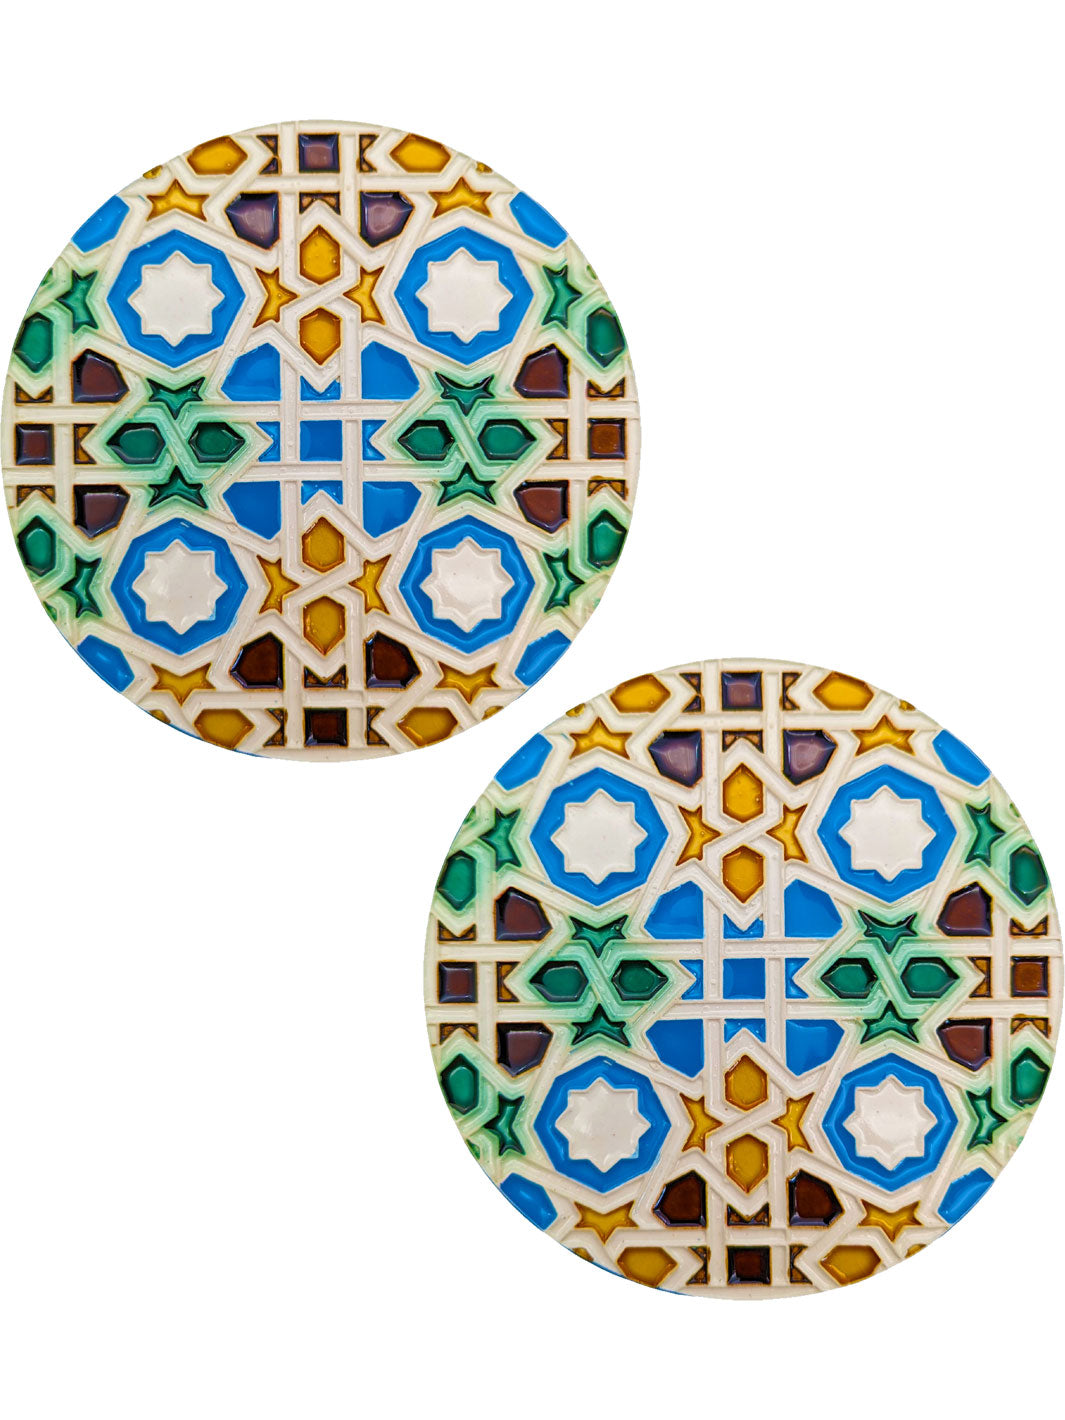 Taza esmaltada Corazón azulejos de Portugal - Factory Of Riojans